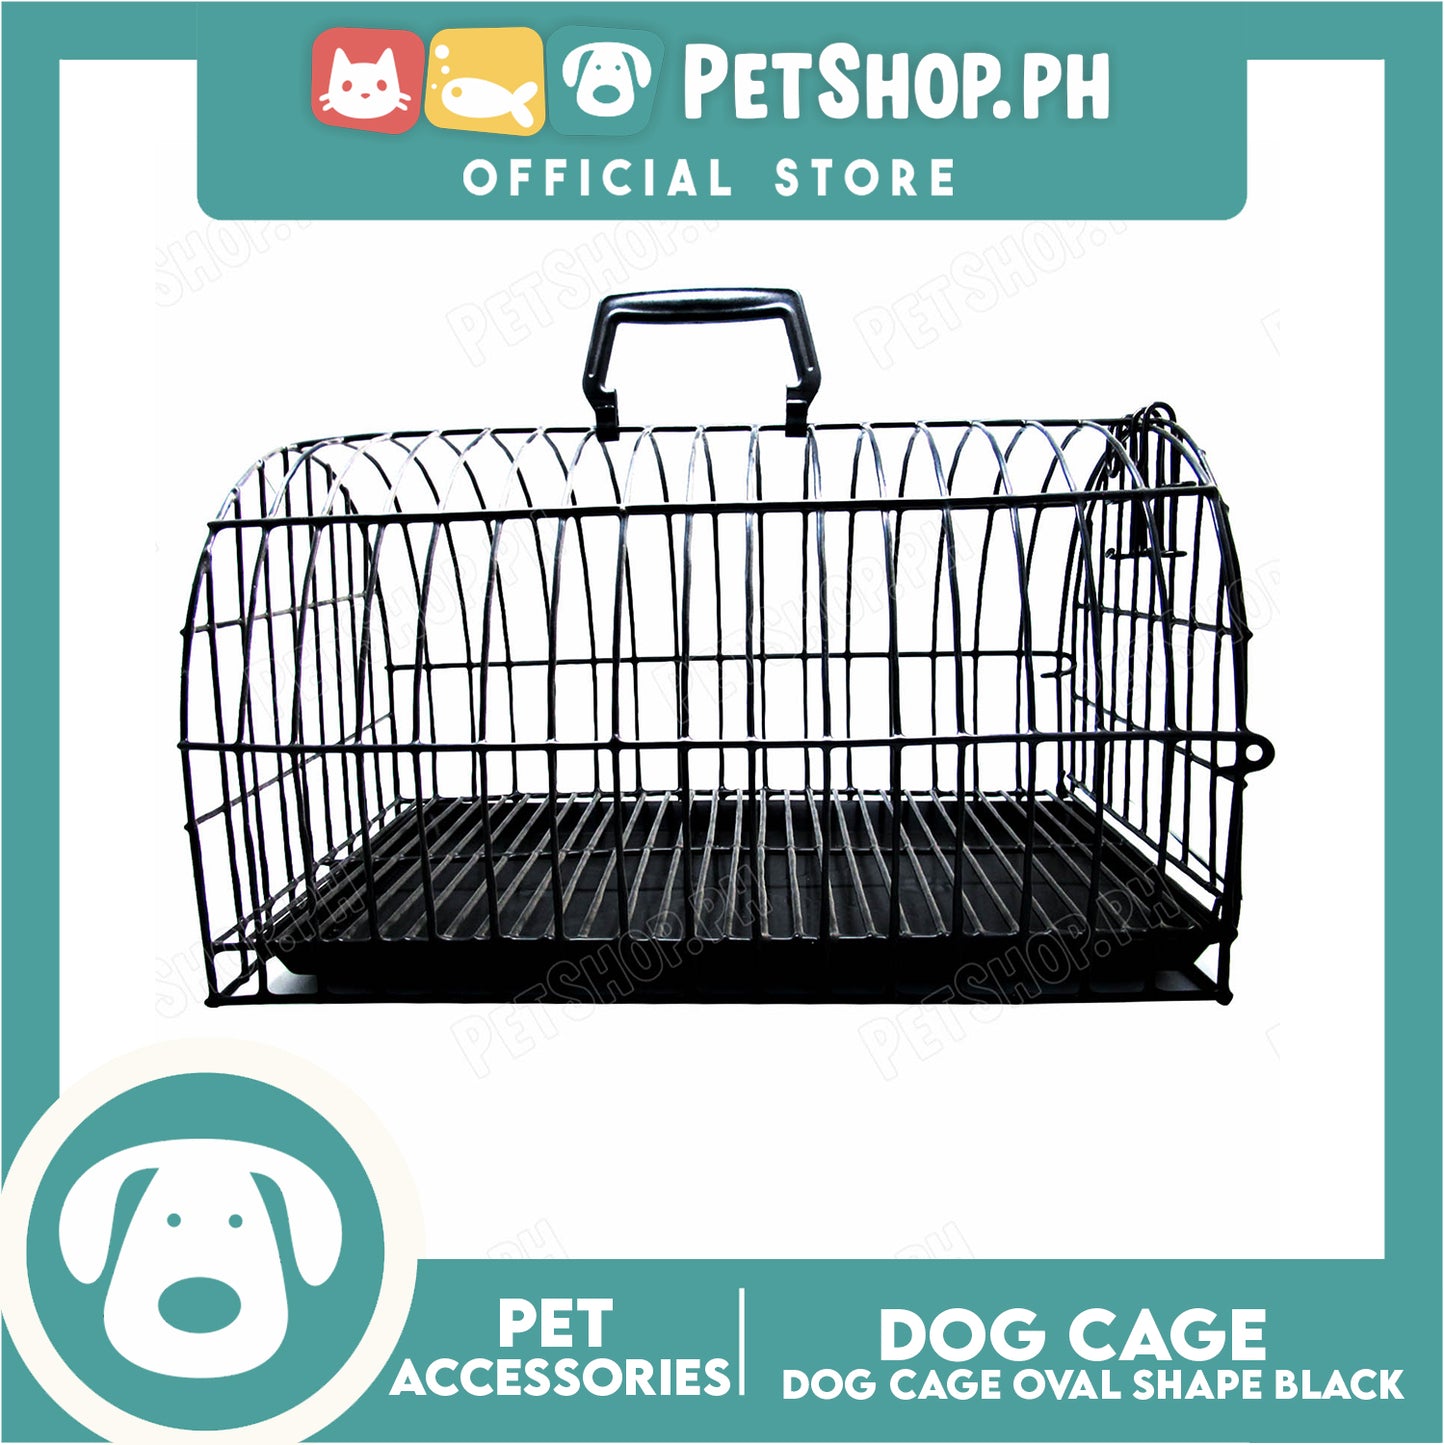 Dog Cage Extra Large Oval Black